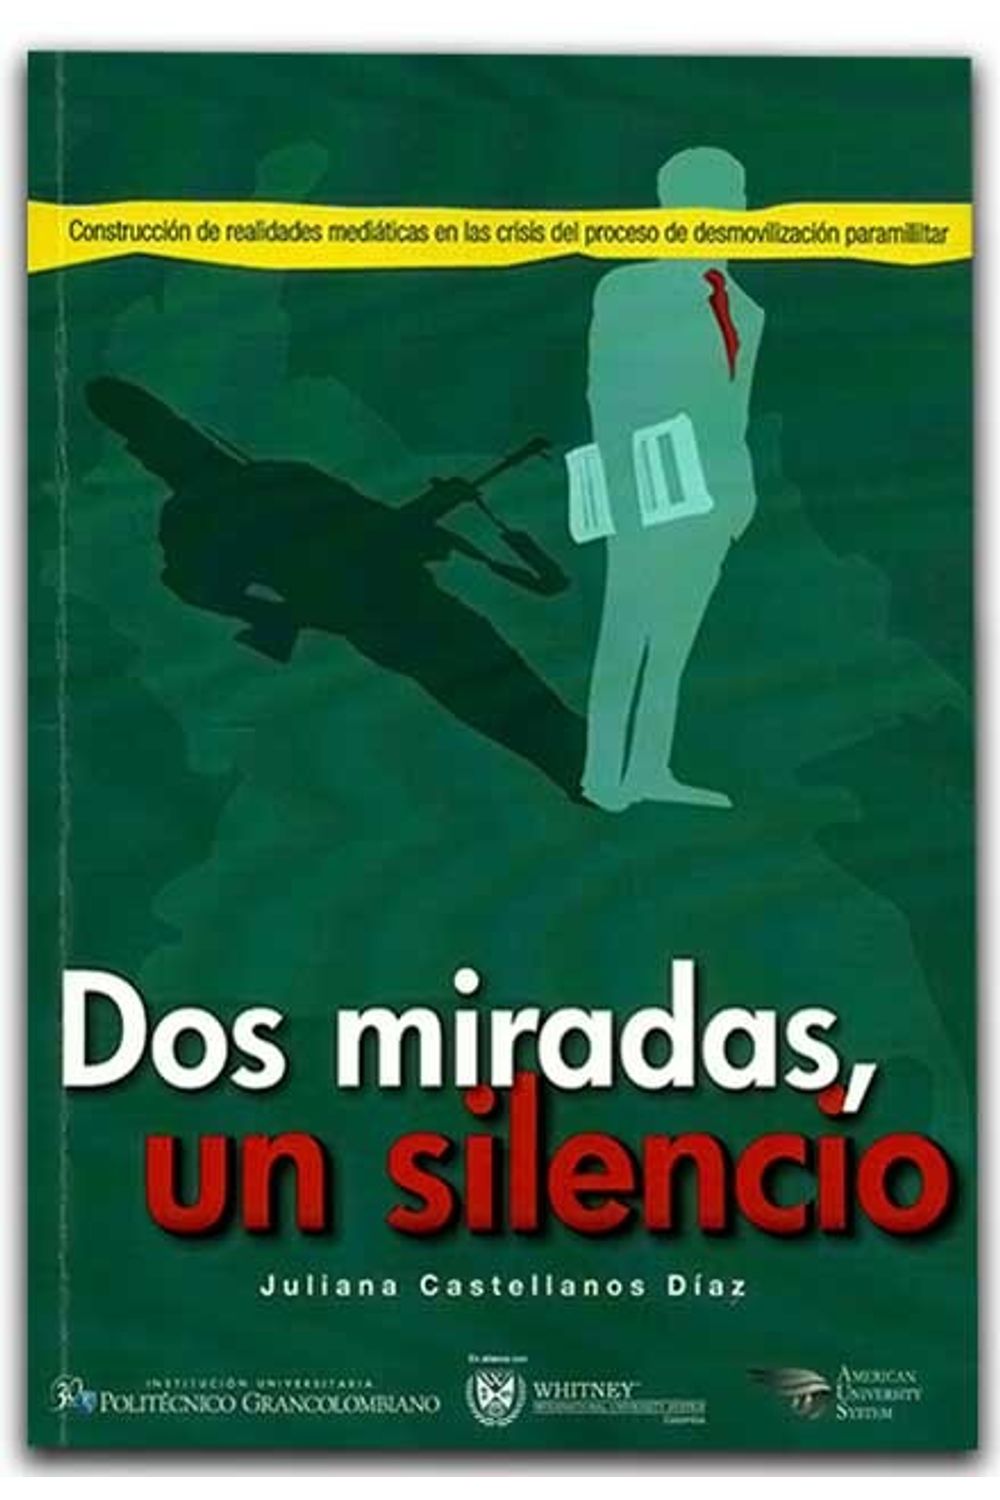 bm-dos-miradas-un-silencio-politecnico-grancolombiano-9789588721019